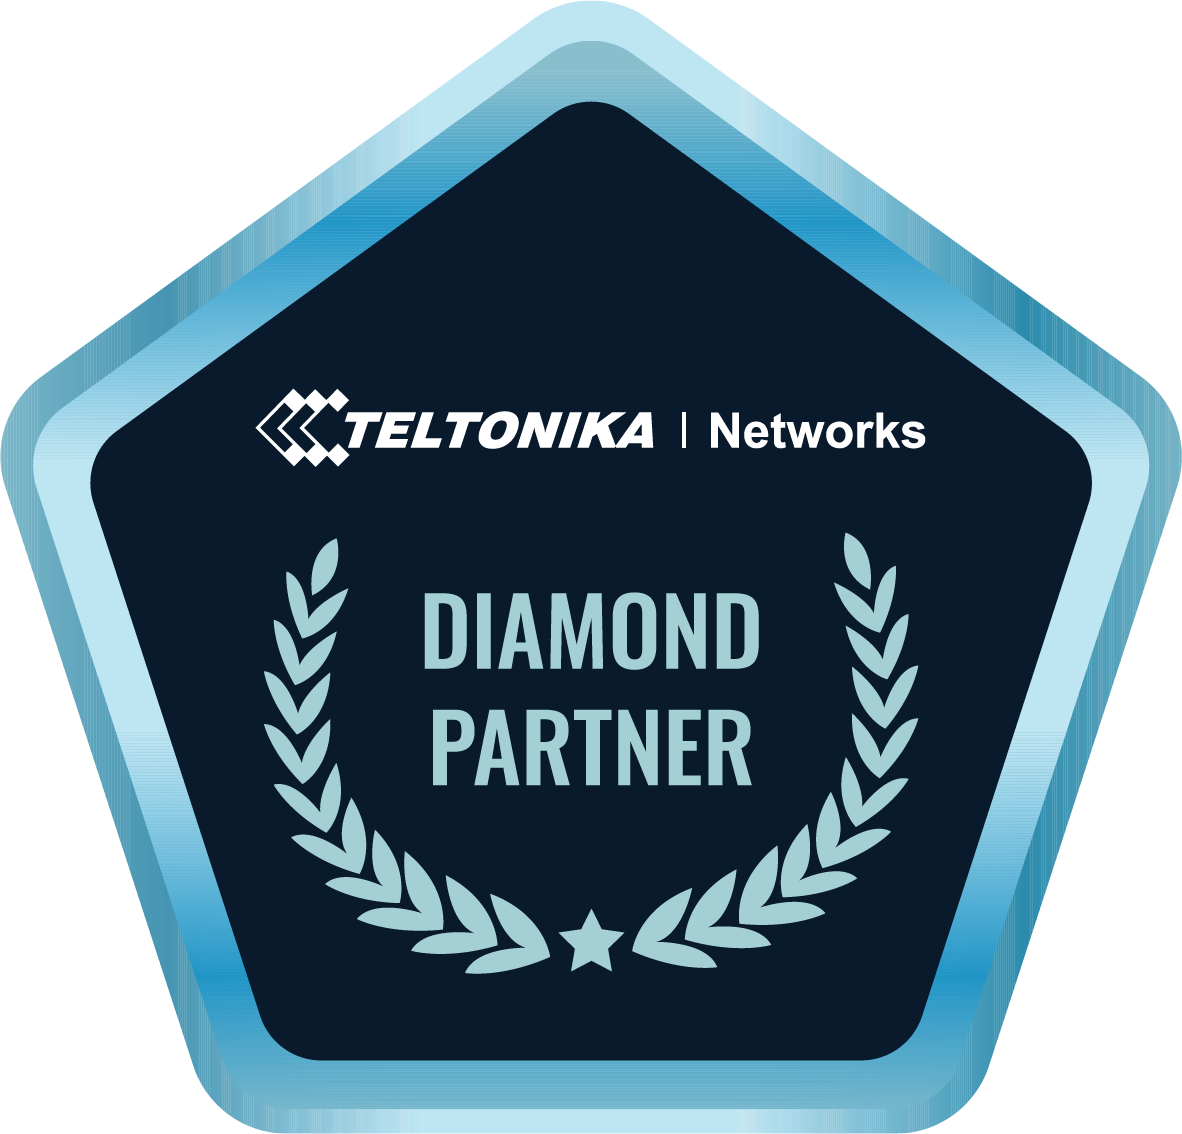 Teltonika networks badge